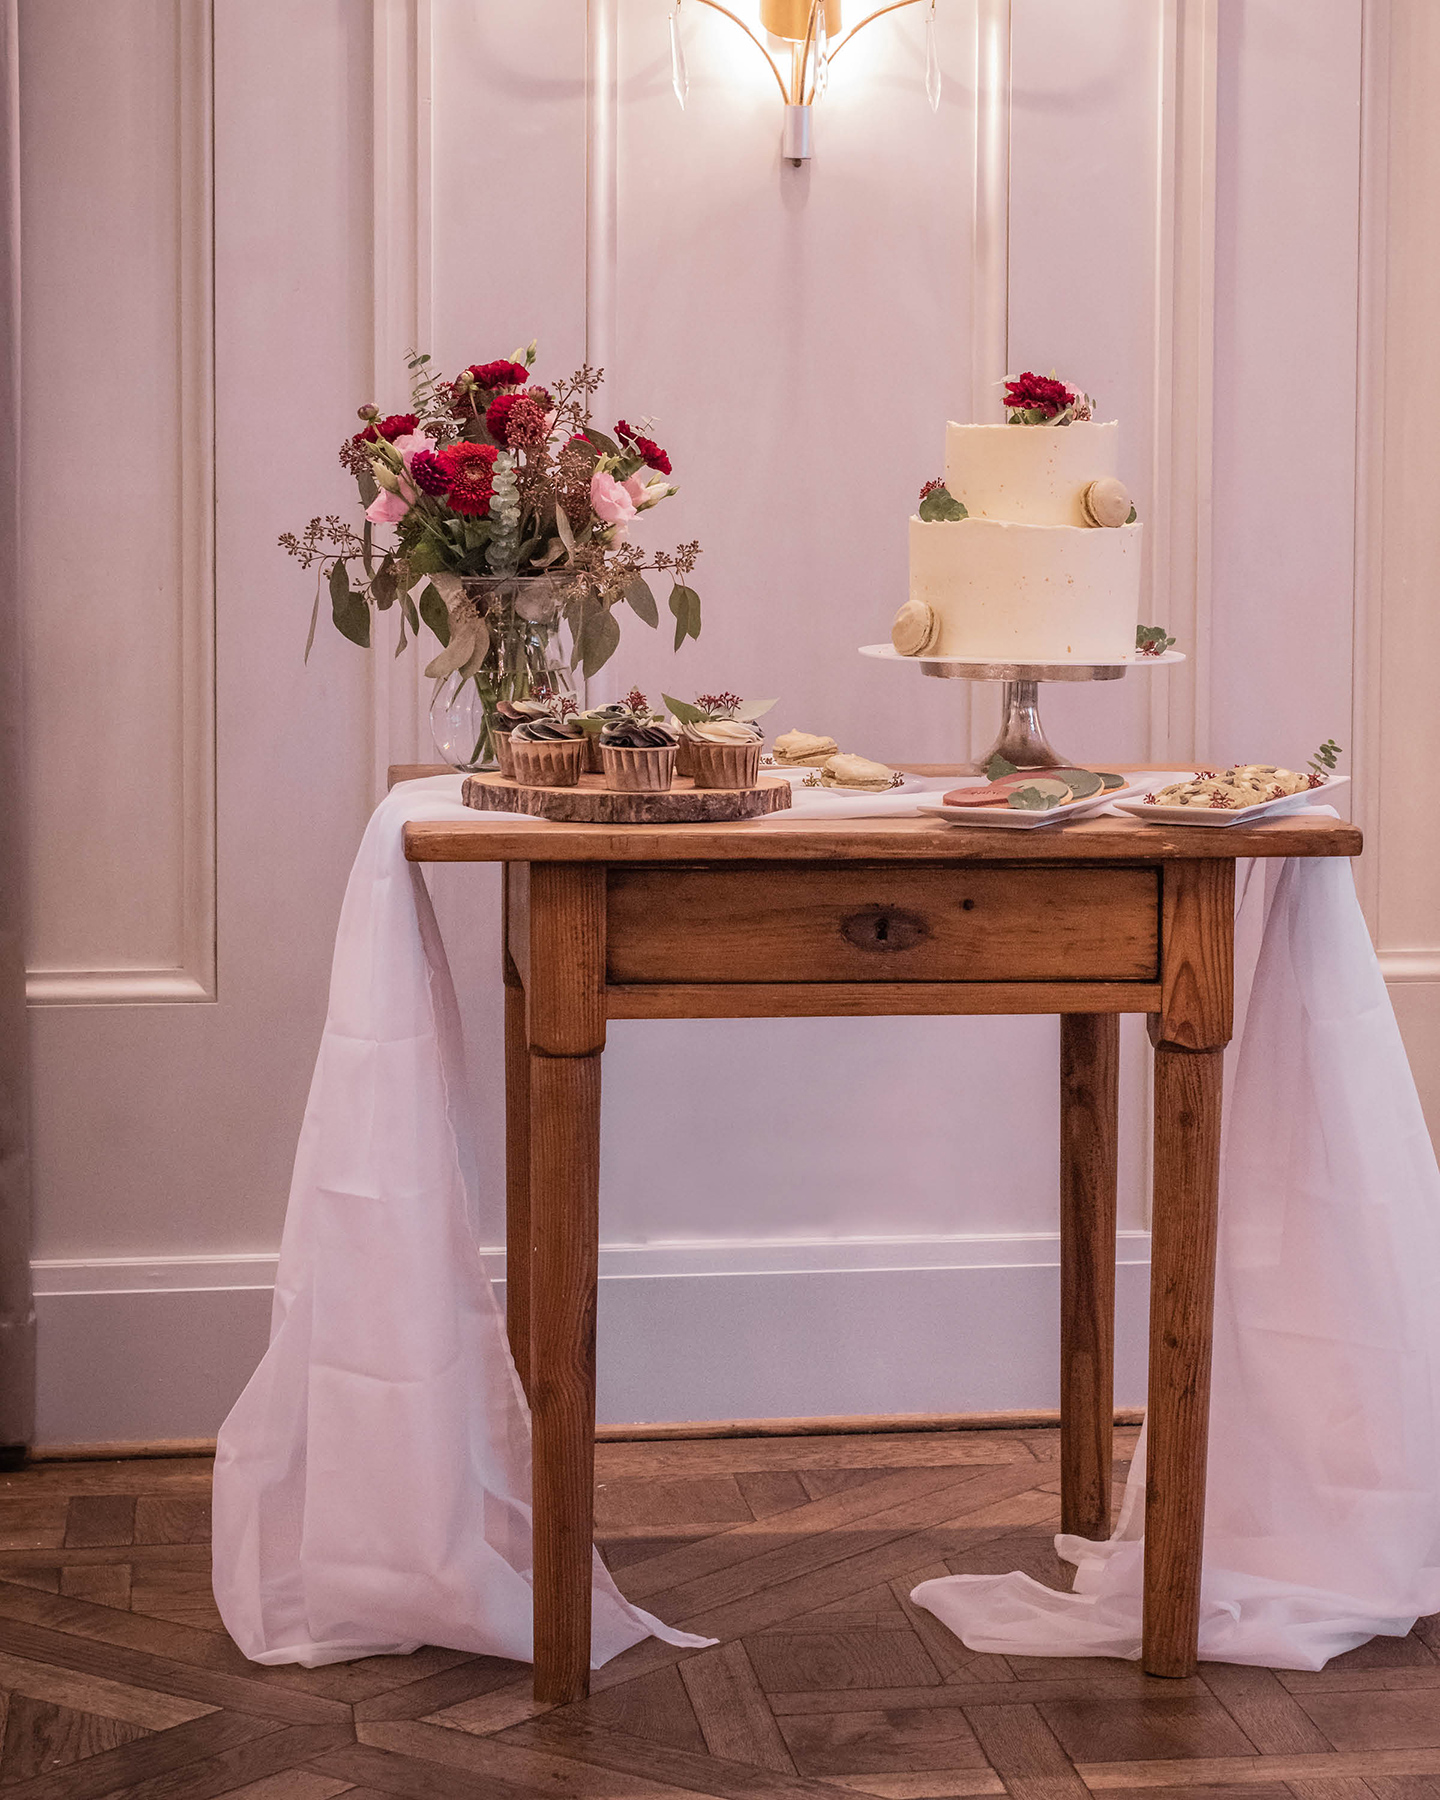 Ein süßes Buffet dekoriert mit der schlichten Hochzeitstorte, handgemachten Keksen und kleinen Cupcakes.